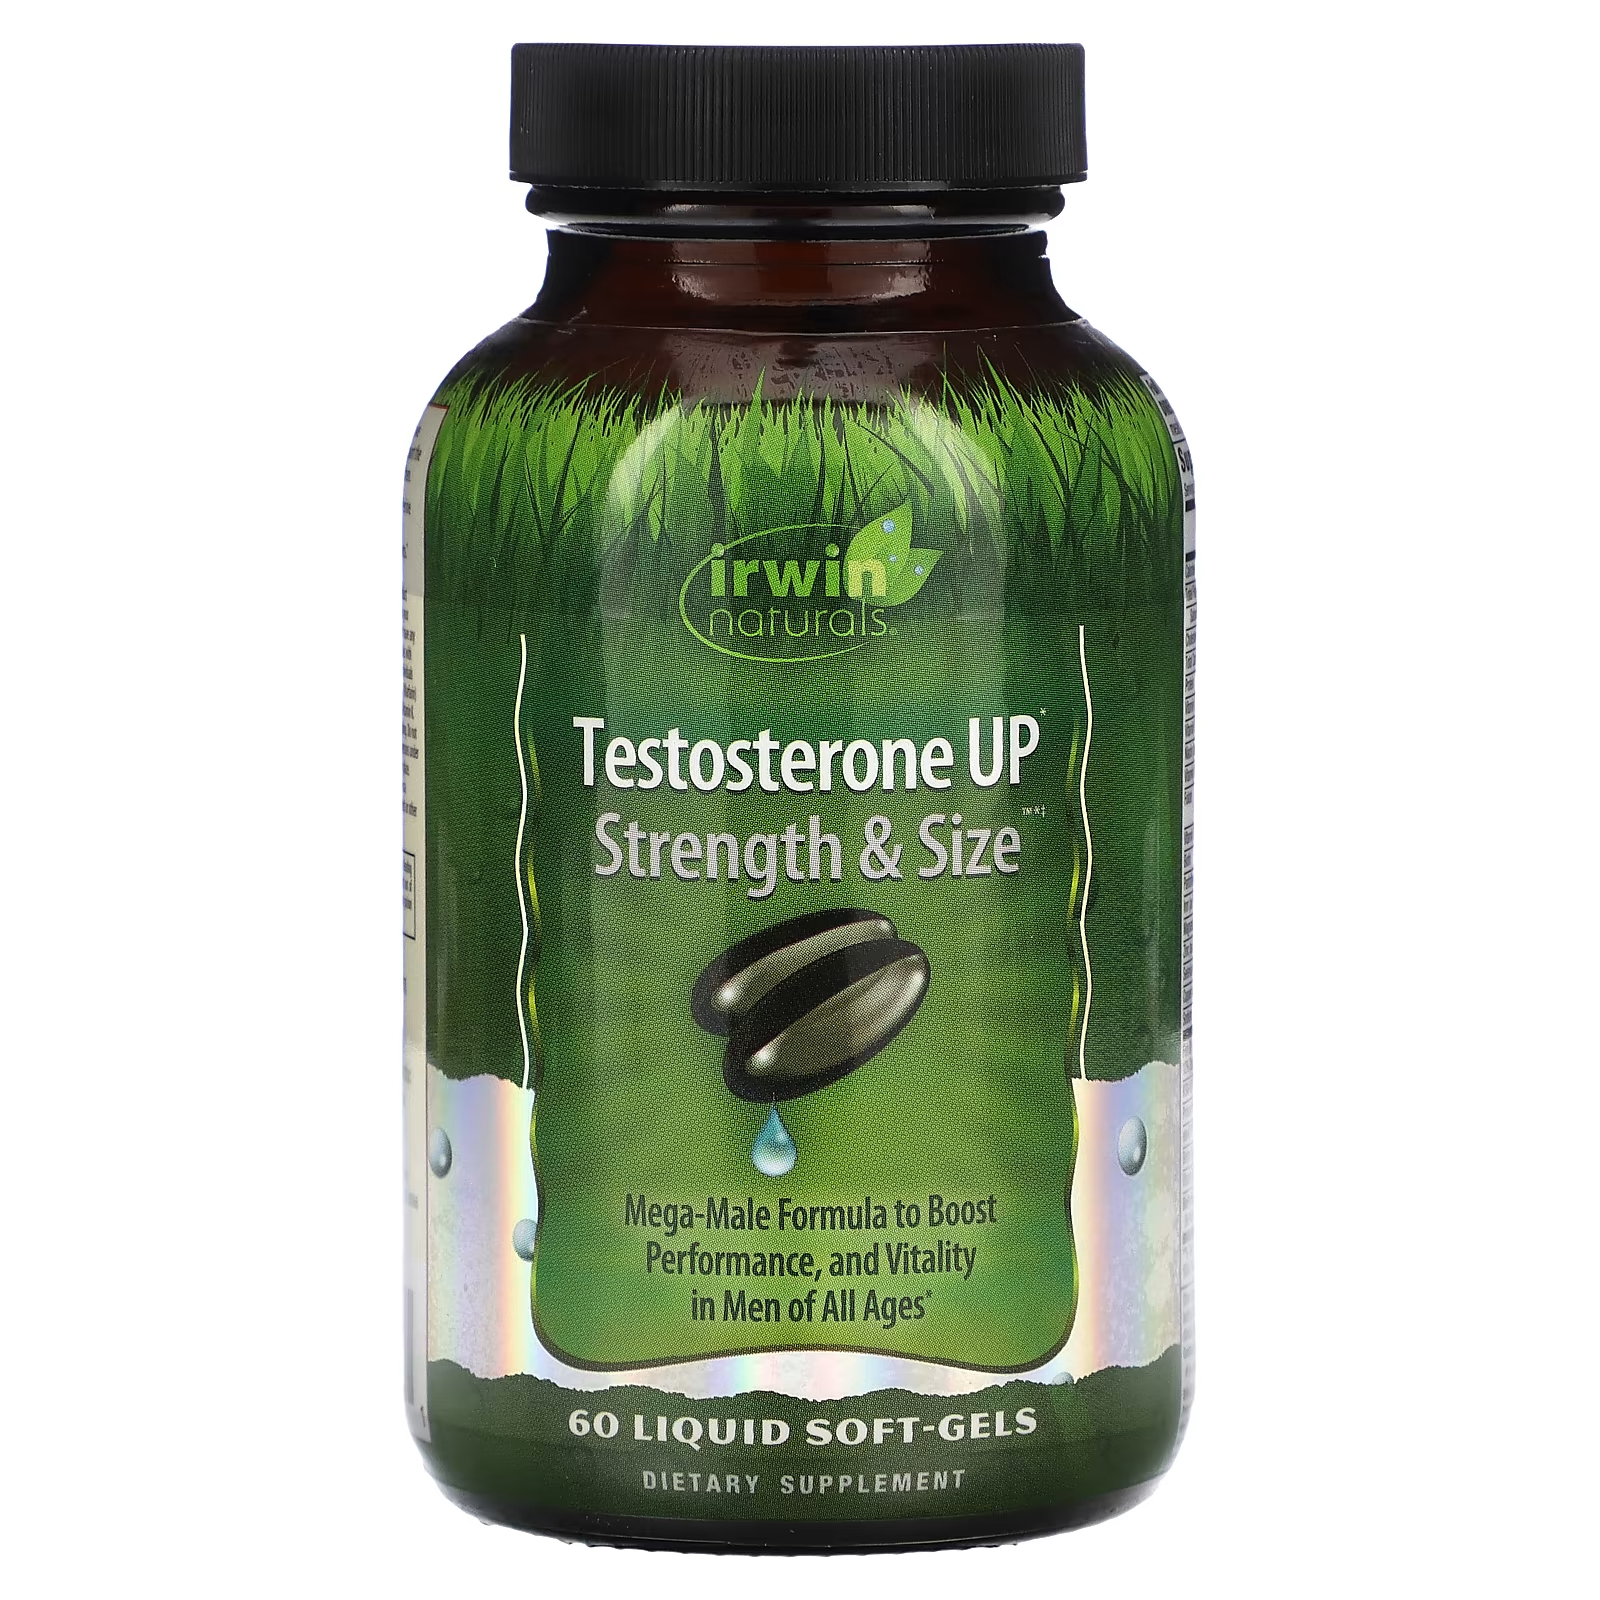 Пищевая добавка Irwin Naturals Testosterone Up Strength & Size, 60 жидких таблеток irwin naturals testosterone up prostate defense двойного действия 60 мягких таблеток